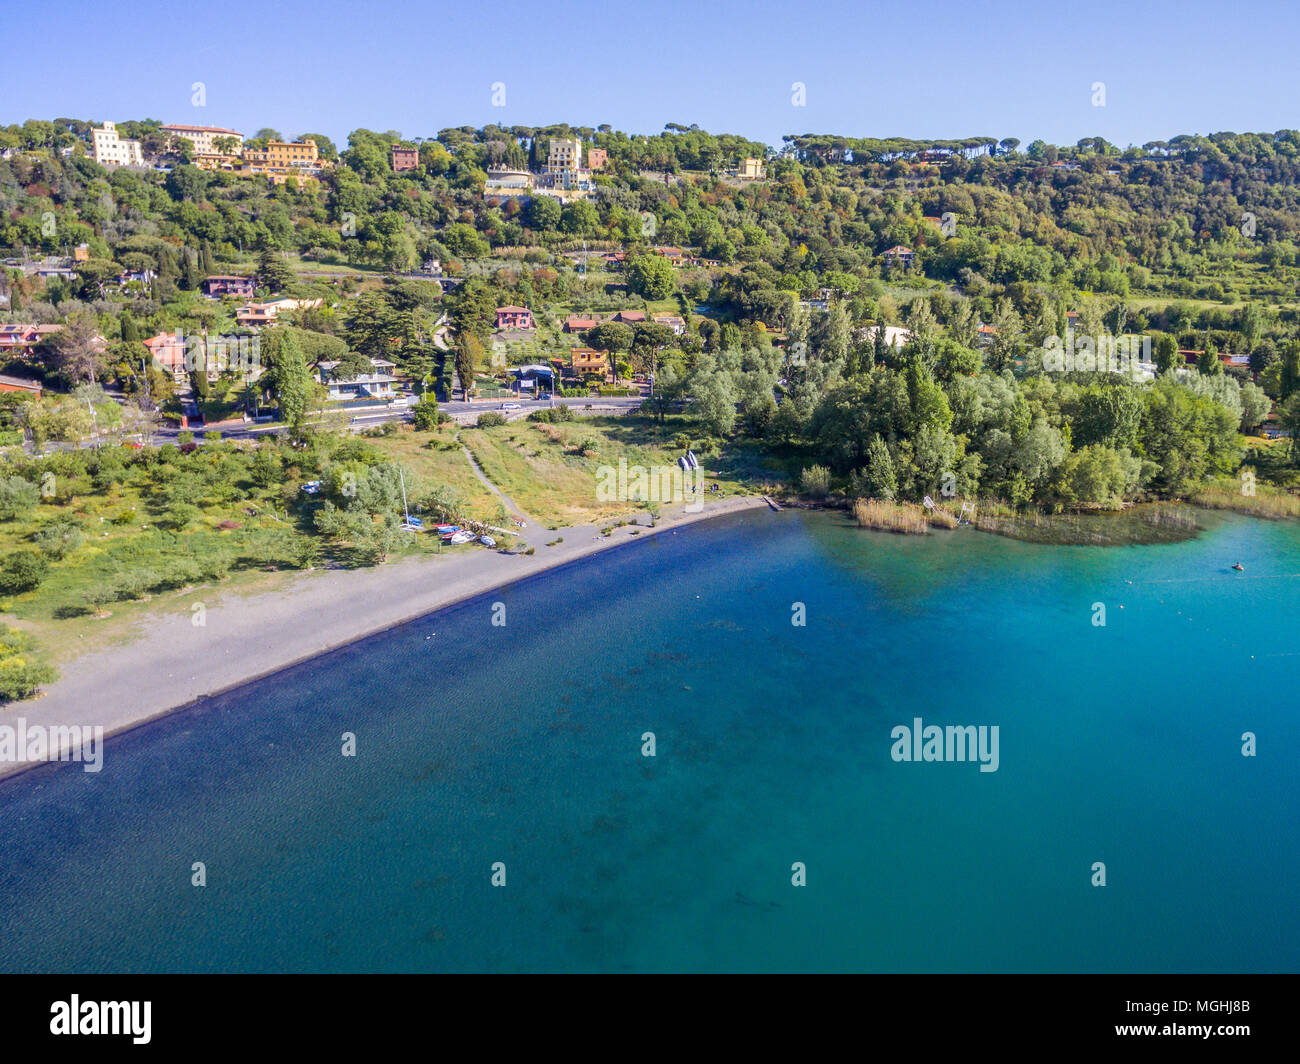 Vista panorámica de la costa del Lago de Albano, Provincia de Roma, Lacio, Italia central. Foto de stock